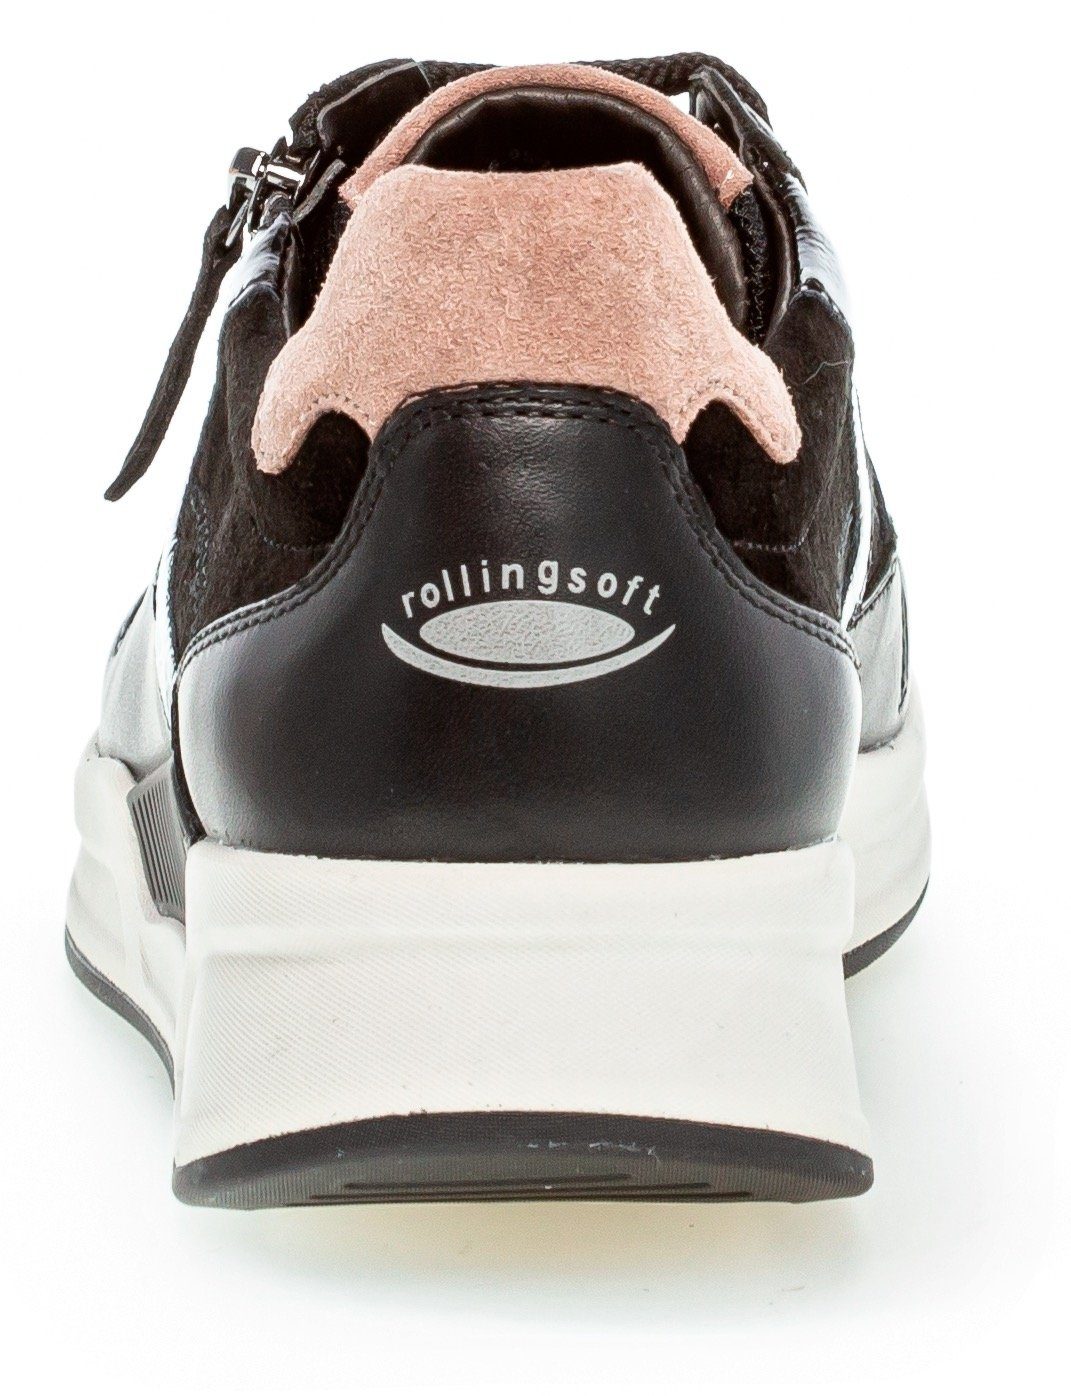 schwarz/dark-rose Außenreißverschluss Gabor mit Rollingsoft Keilsneaker praktischem